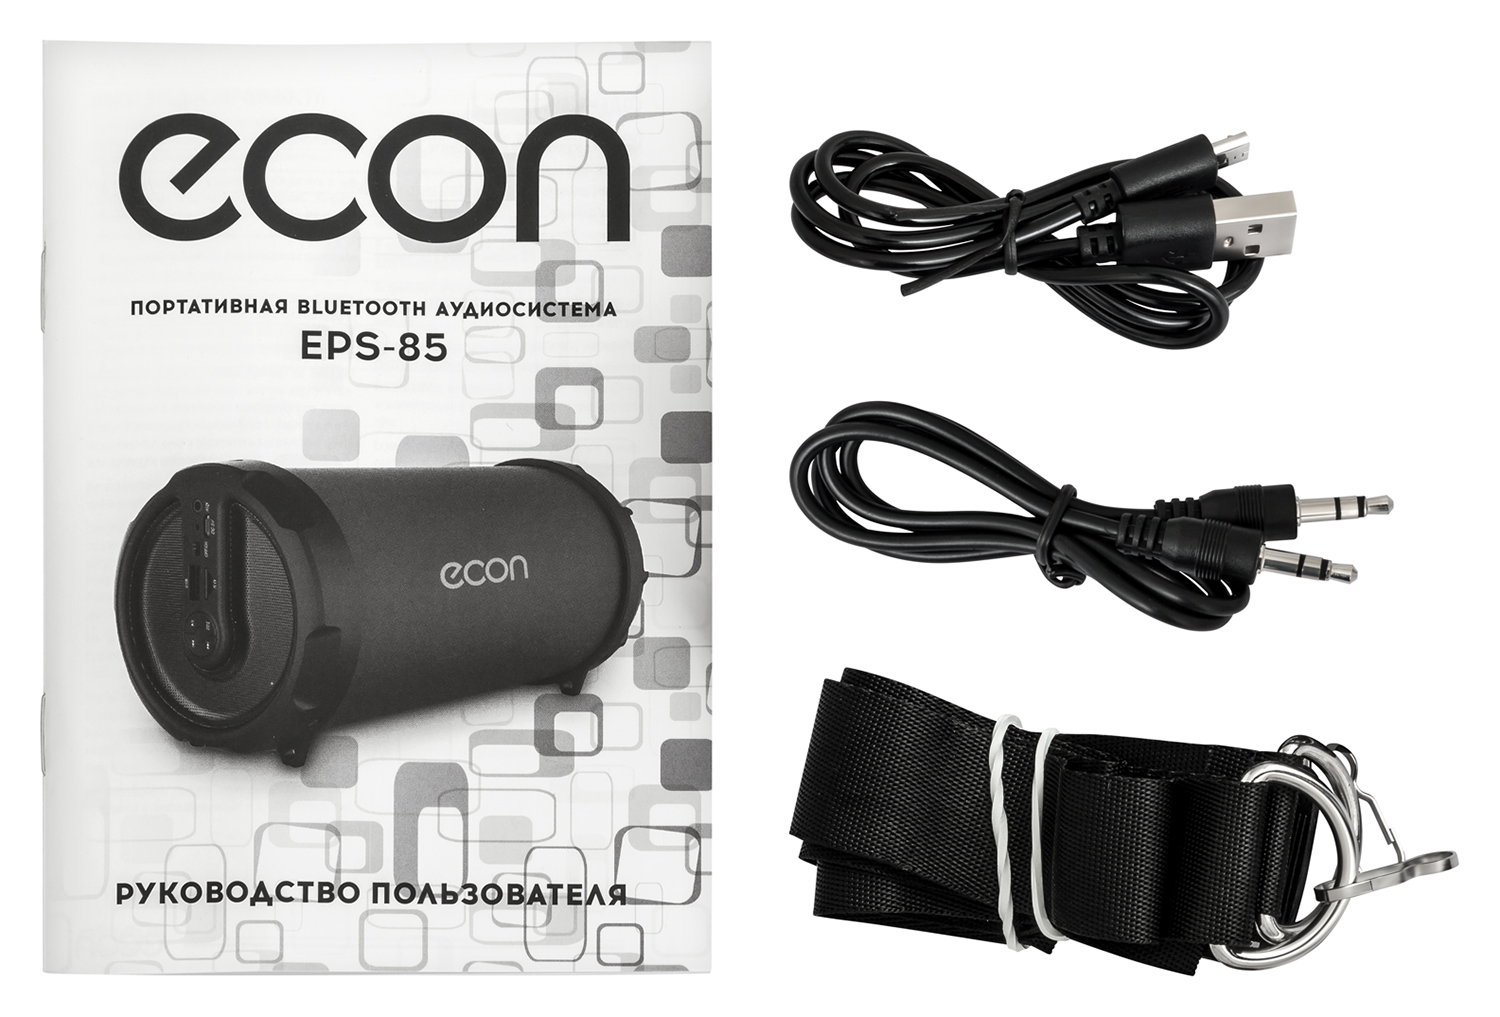 Картинка Портативная акустика ECON EPS-85 по разумной цене купить в интернет магазине mall.su